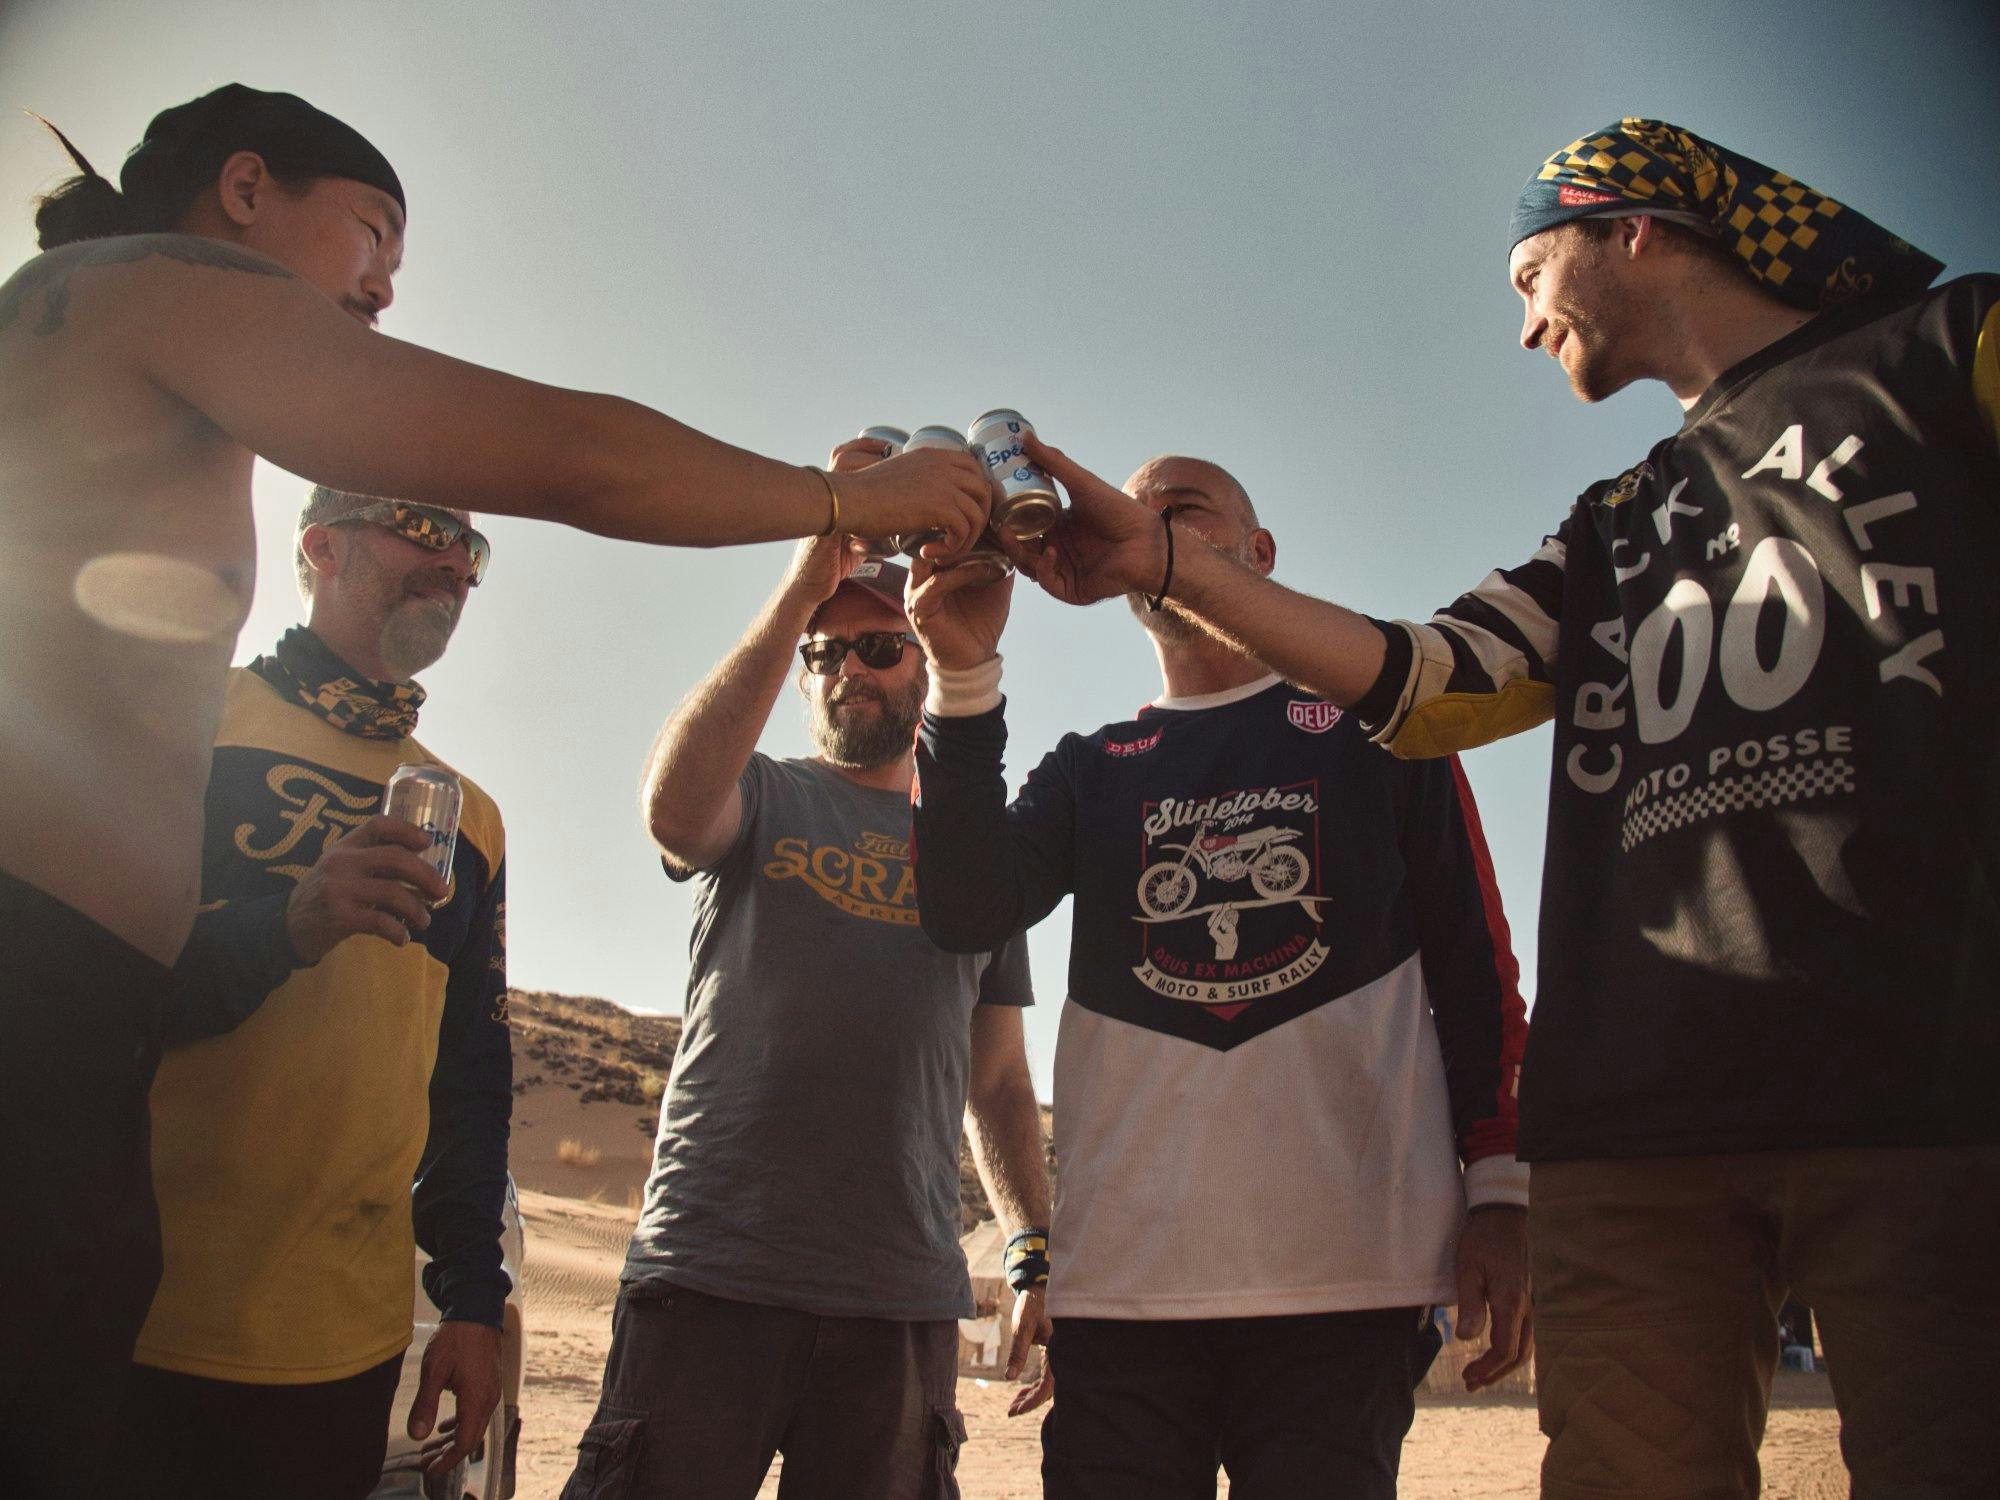 drinks in the desert